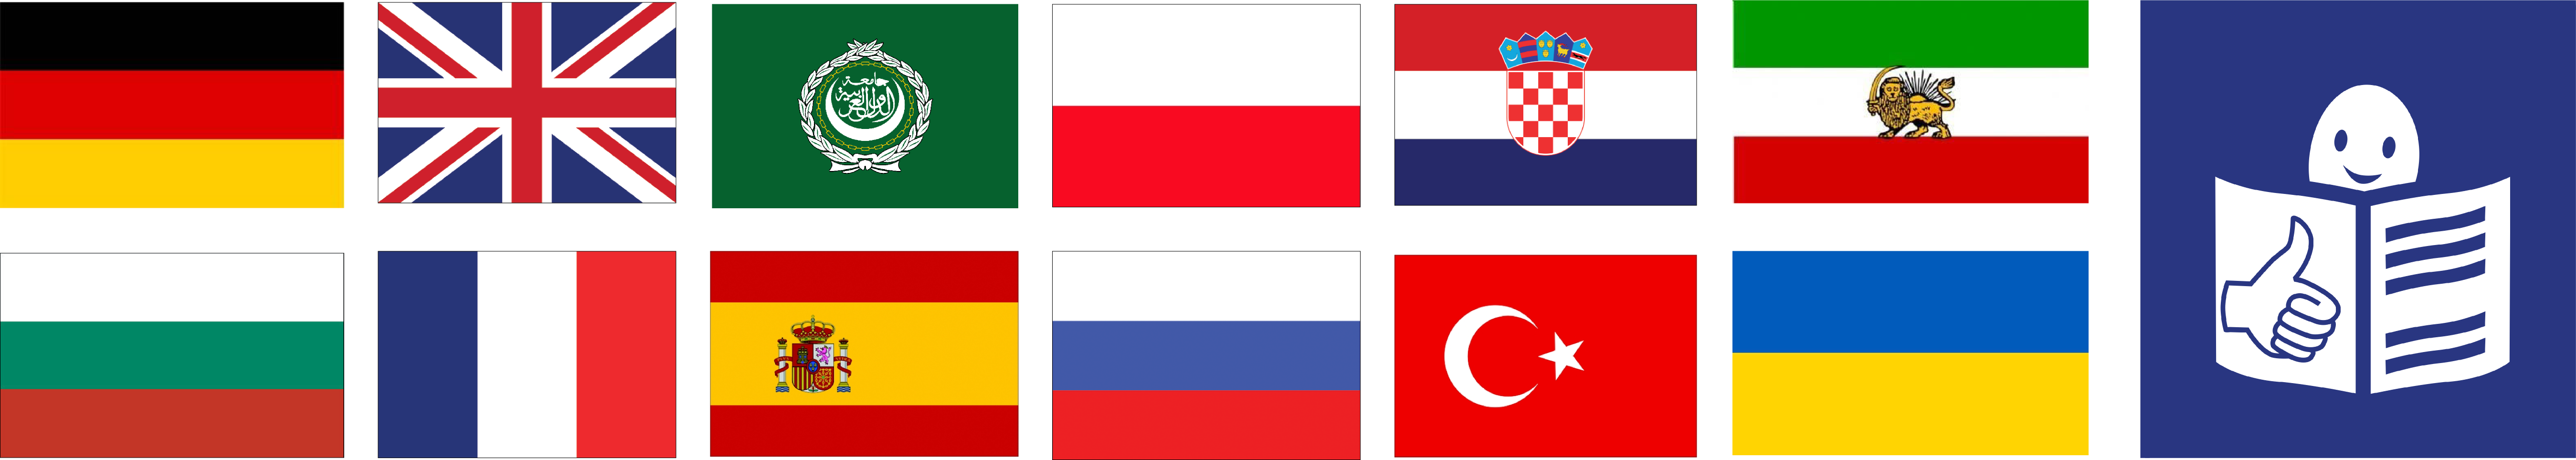 Imagemap mit den Fahnen verschiedener Länder